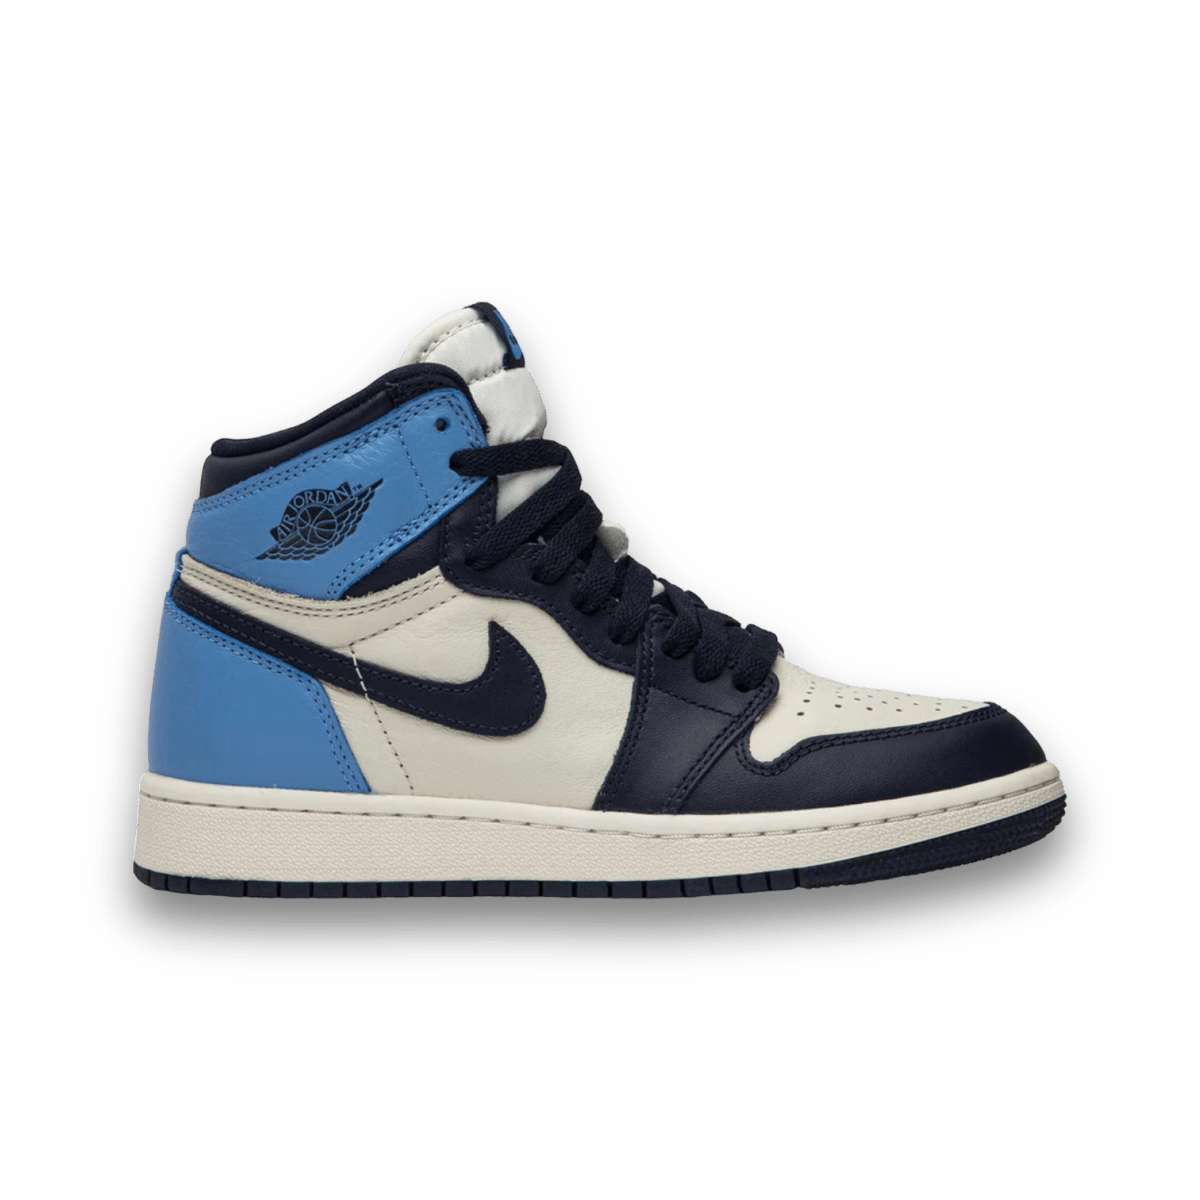 Jordan 1 Retro High Obsidian - Grade School - High Sneaker - Jawns on Fire Sneakers & Streetwear